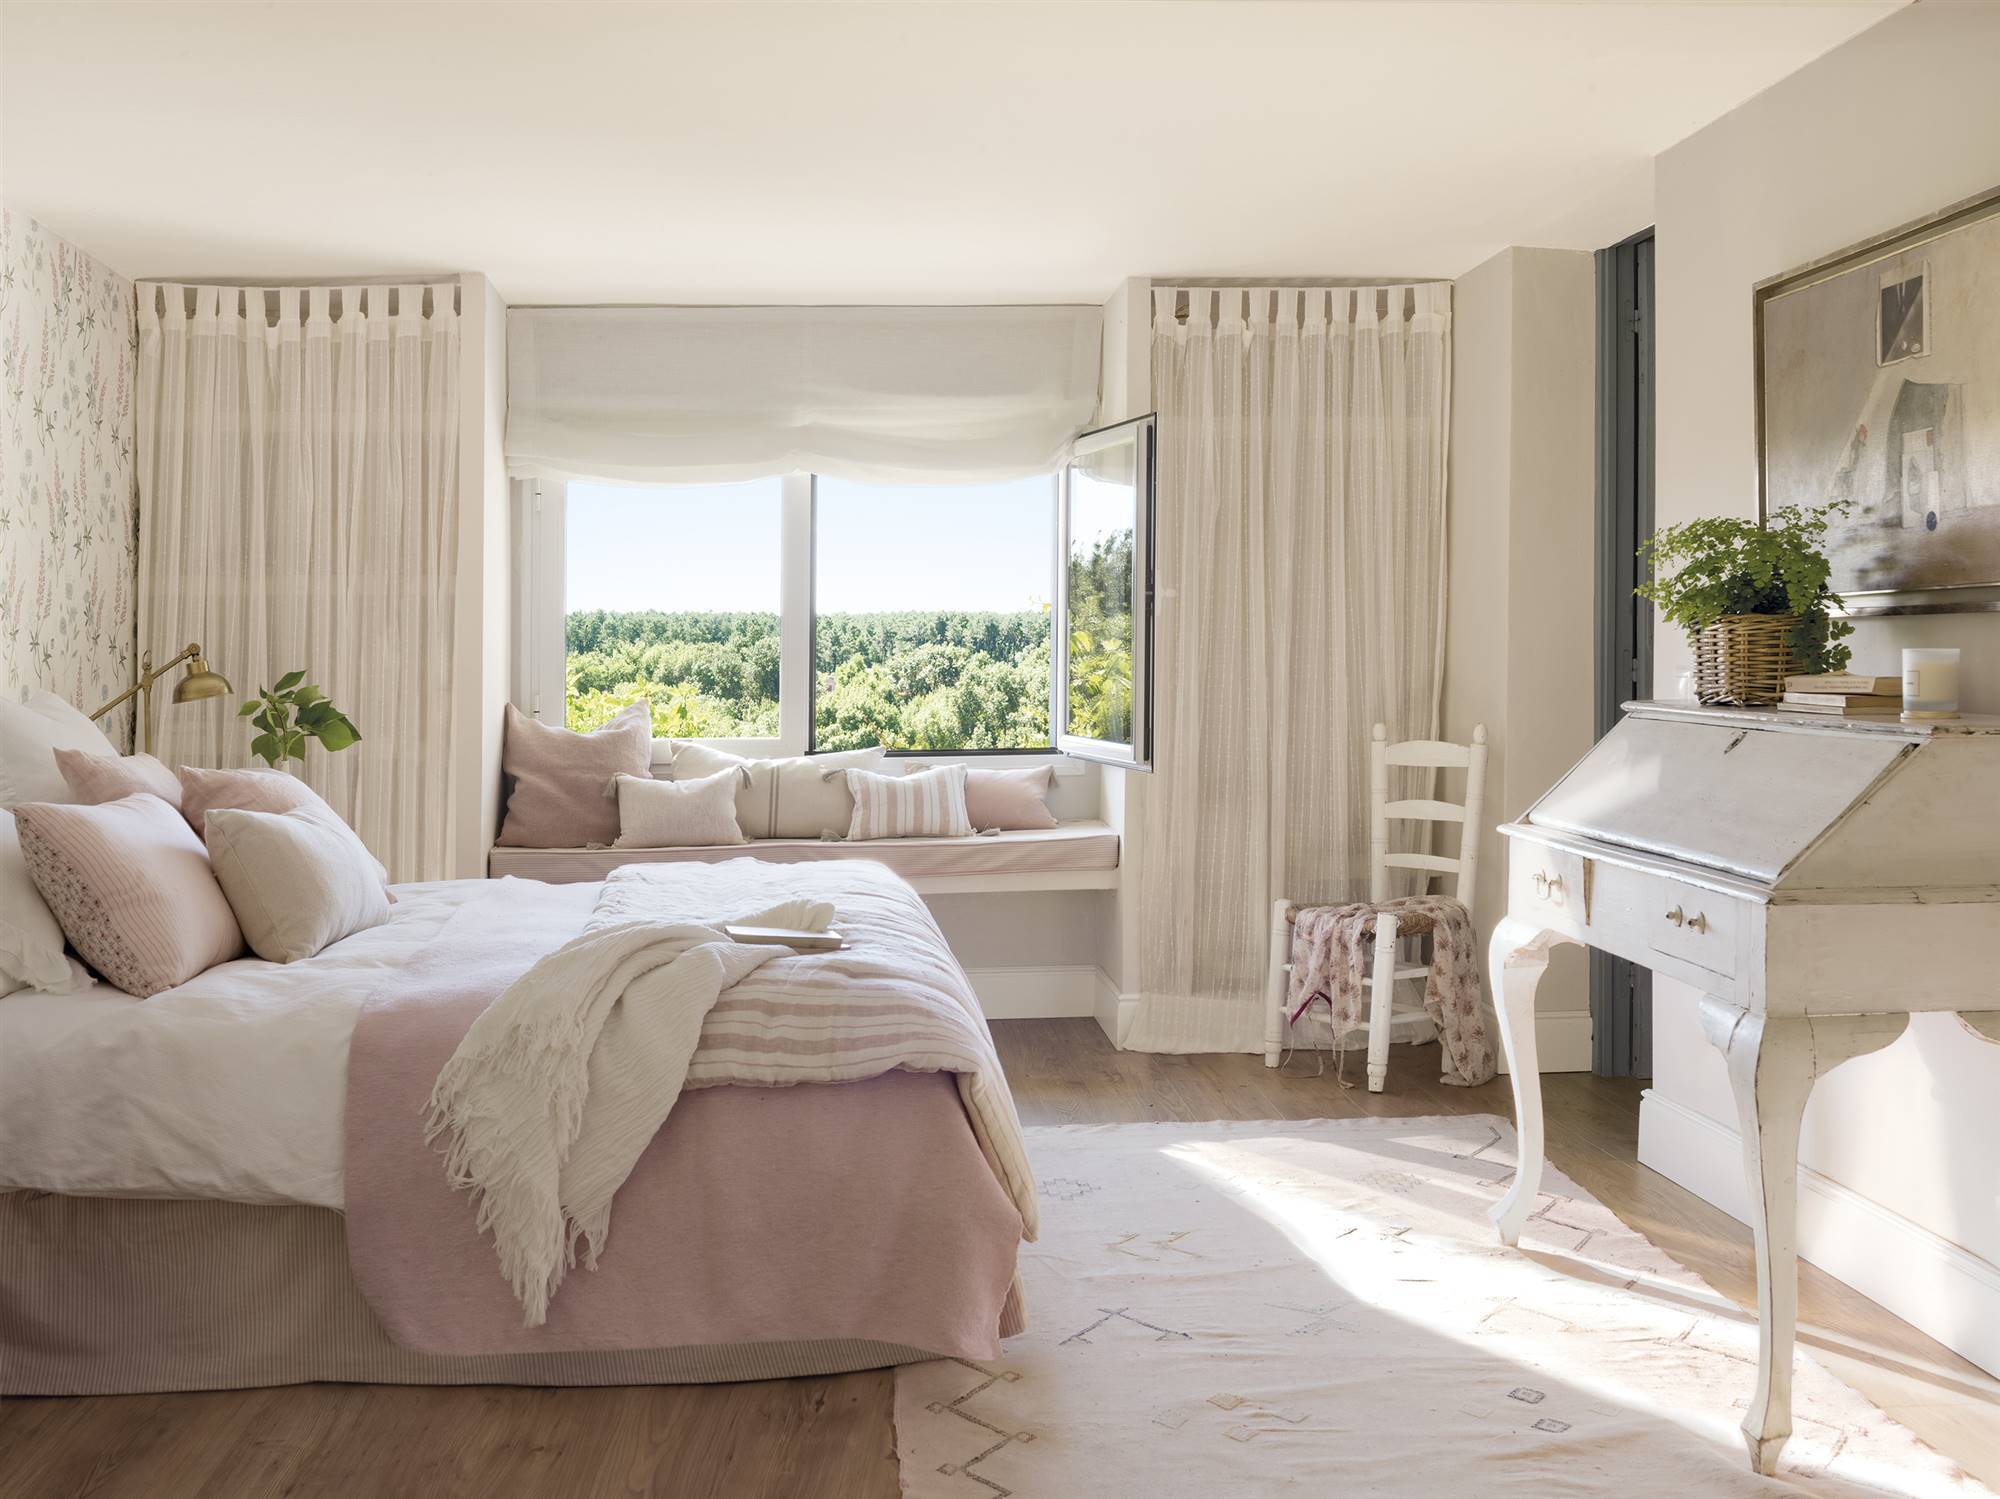 Dormitorio en tonos claros y rosa pastel con estilo provenzal